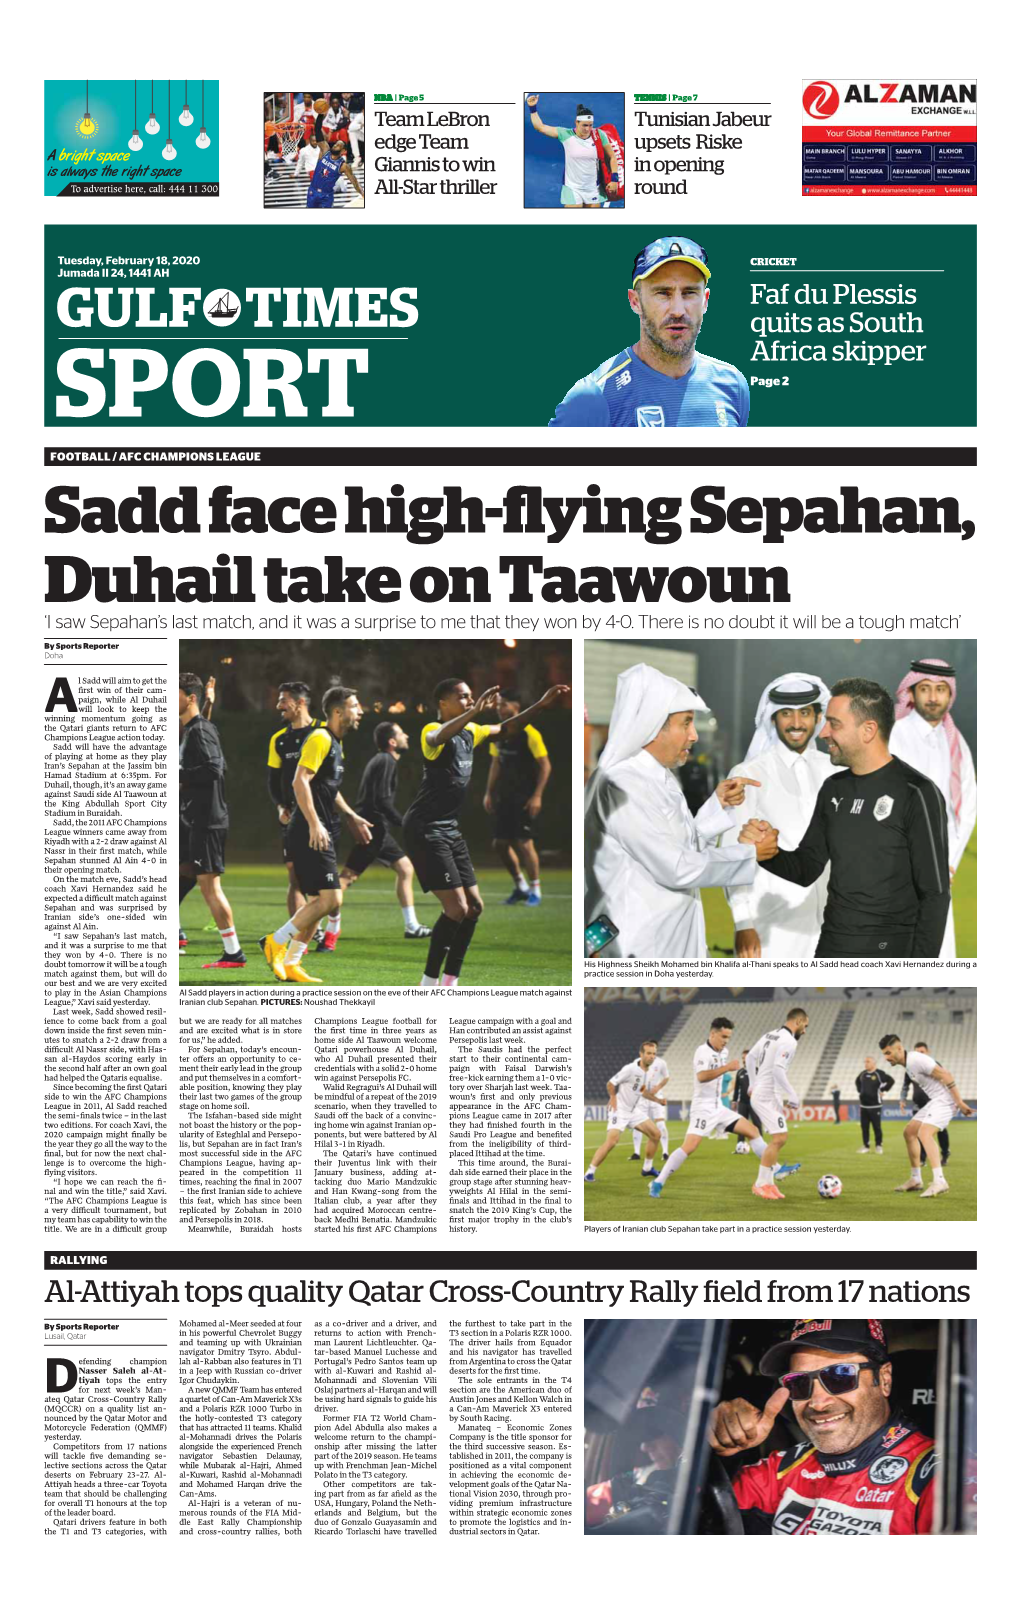 Sadd Face High-Flying Sepahan, Duhail Take on Taawoun